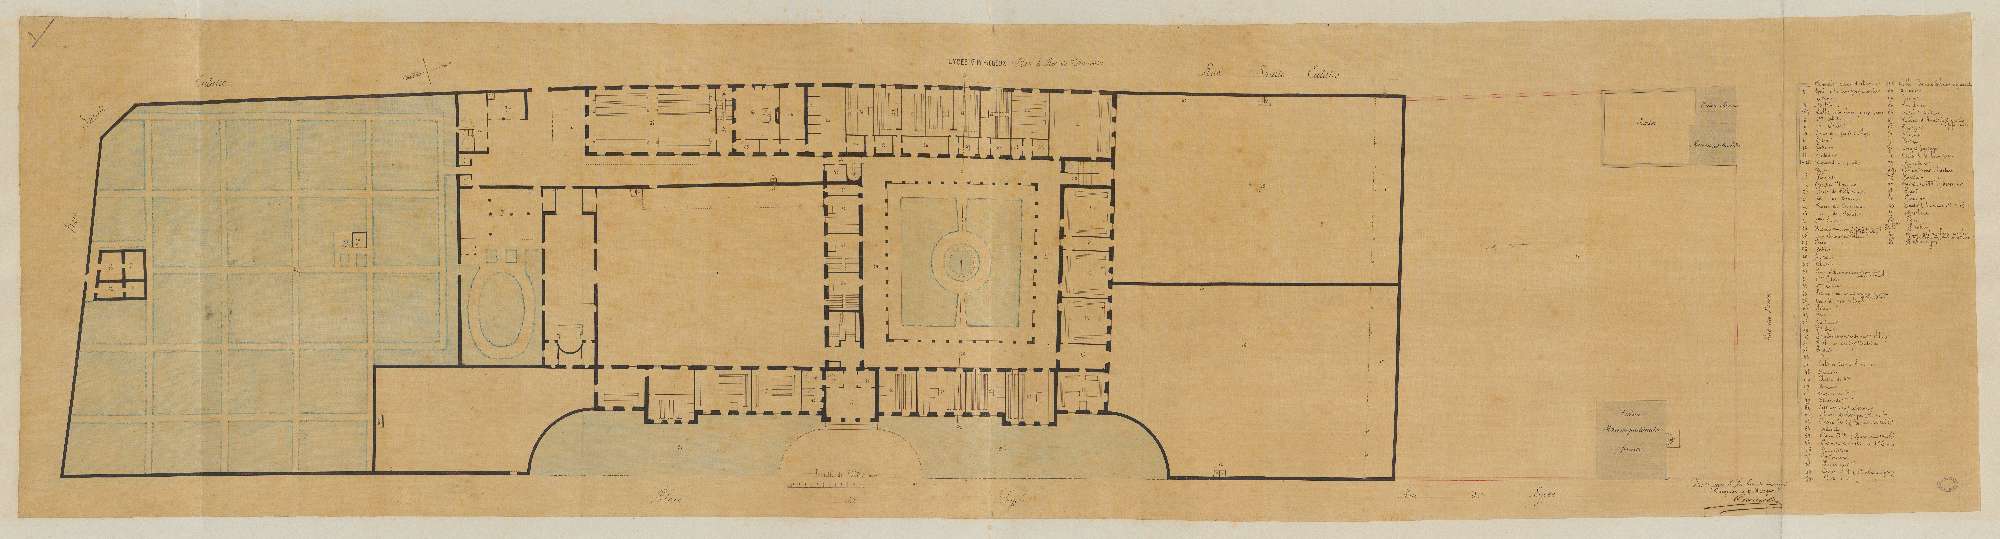 Lycée impérial. Plan du rdc. 0.005 pm. Signé de l'architecte Elie Poncet Cruvelier, 17 mars 1862. (AN)